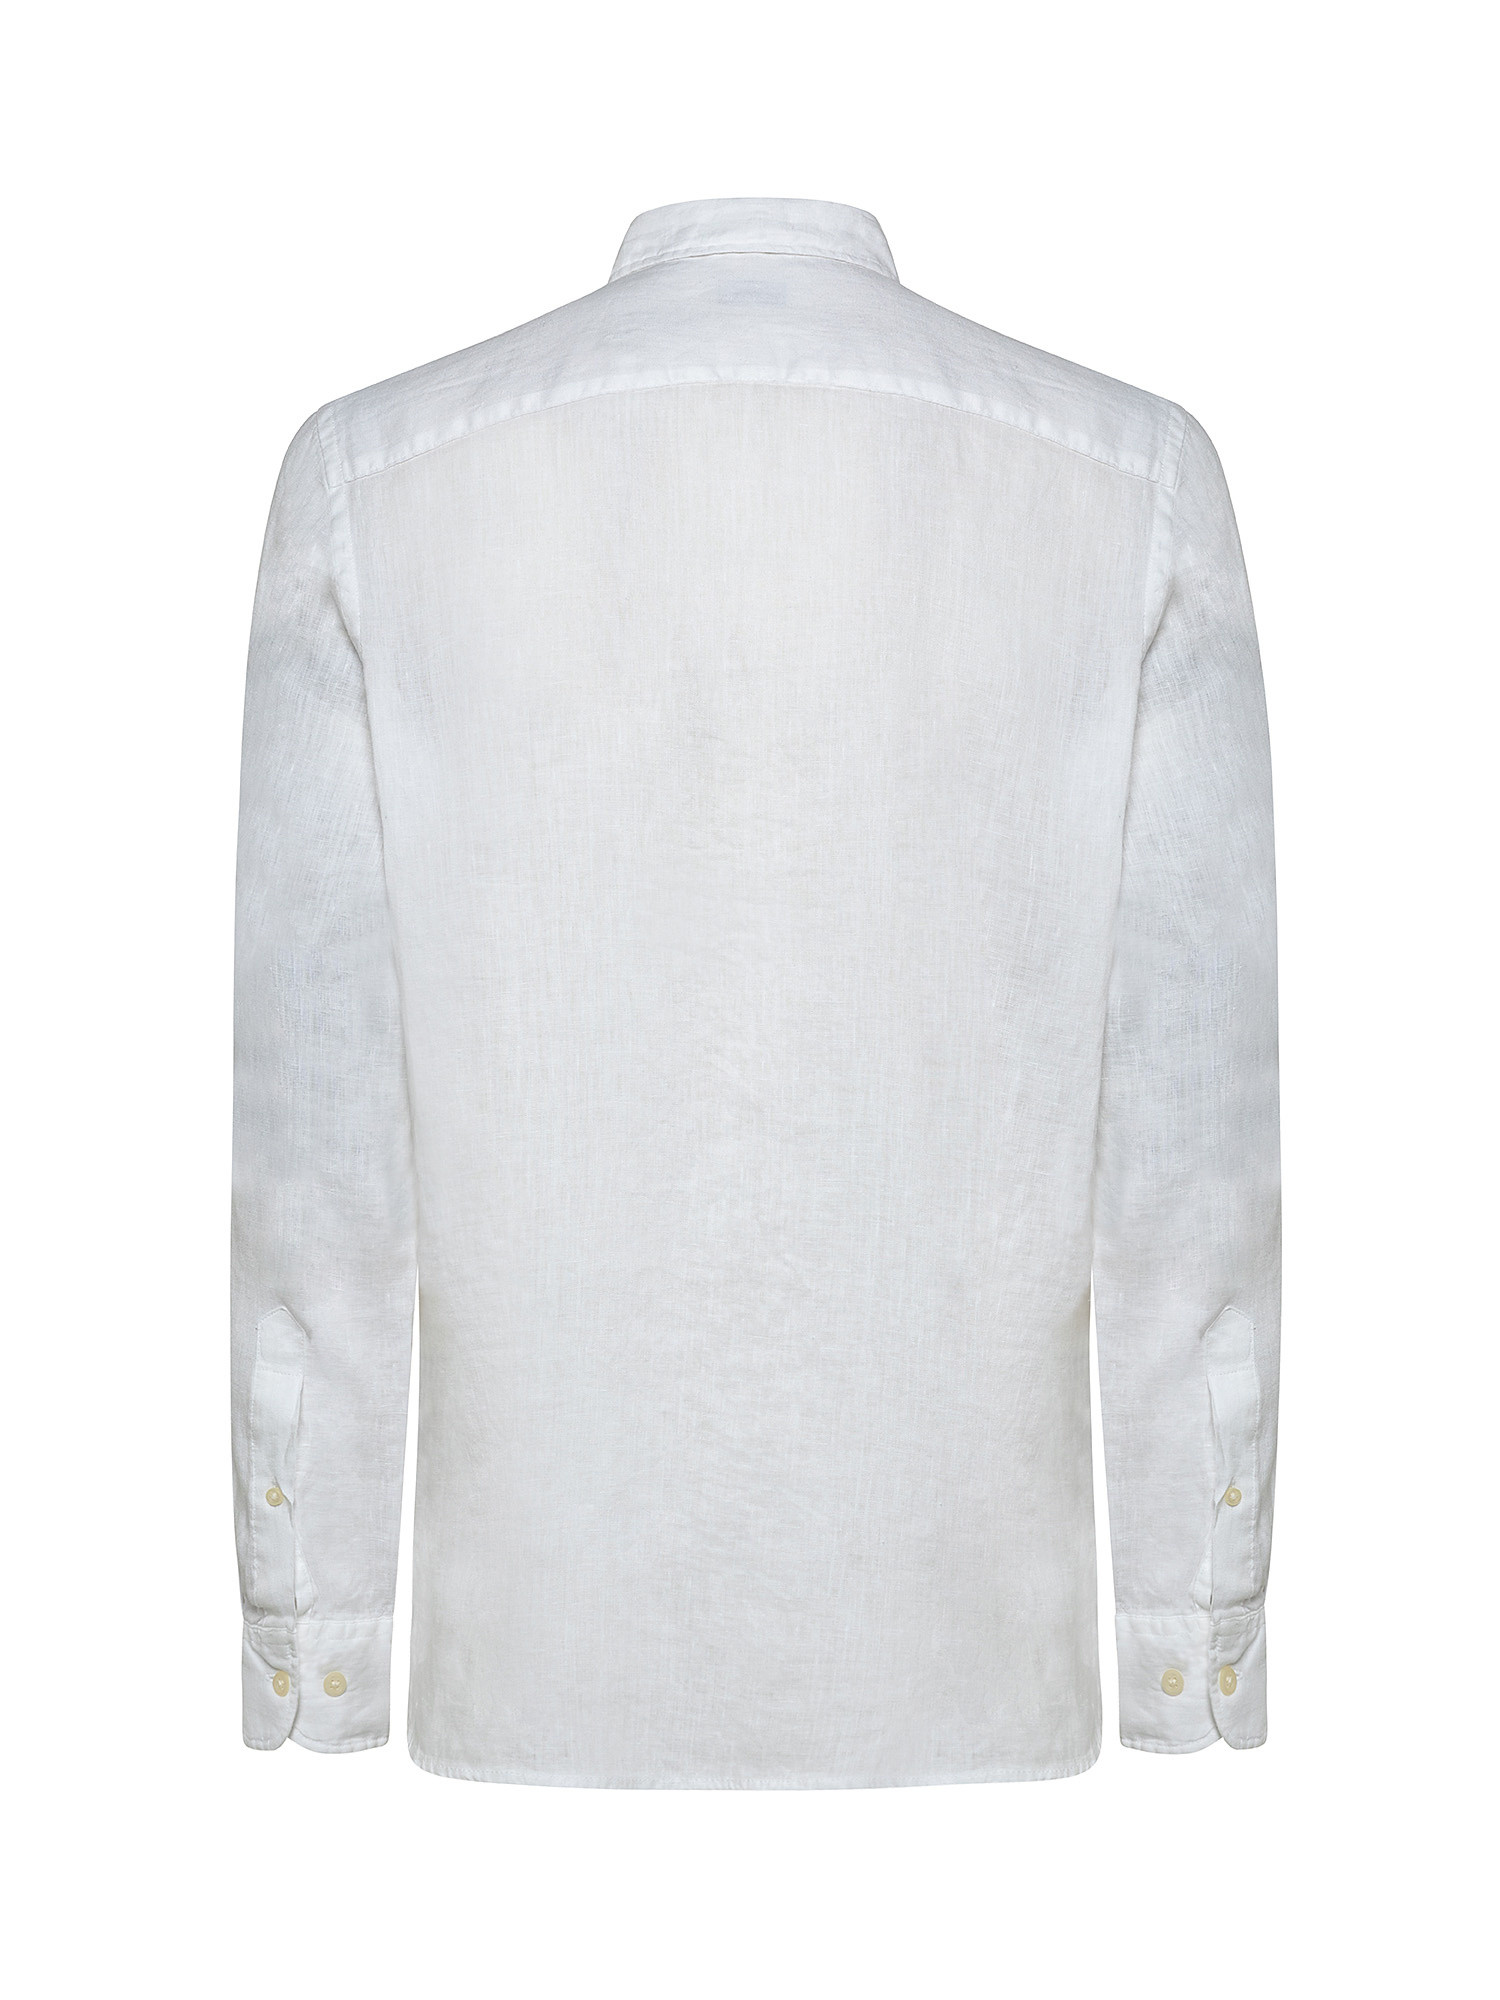 Camicia puro lino collo francese, Bianco, large